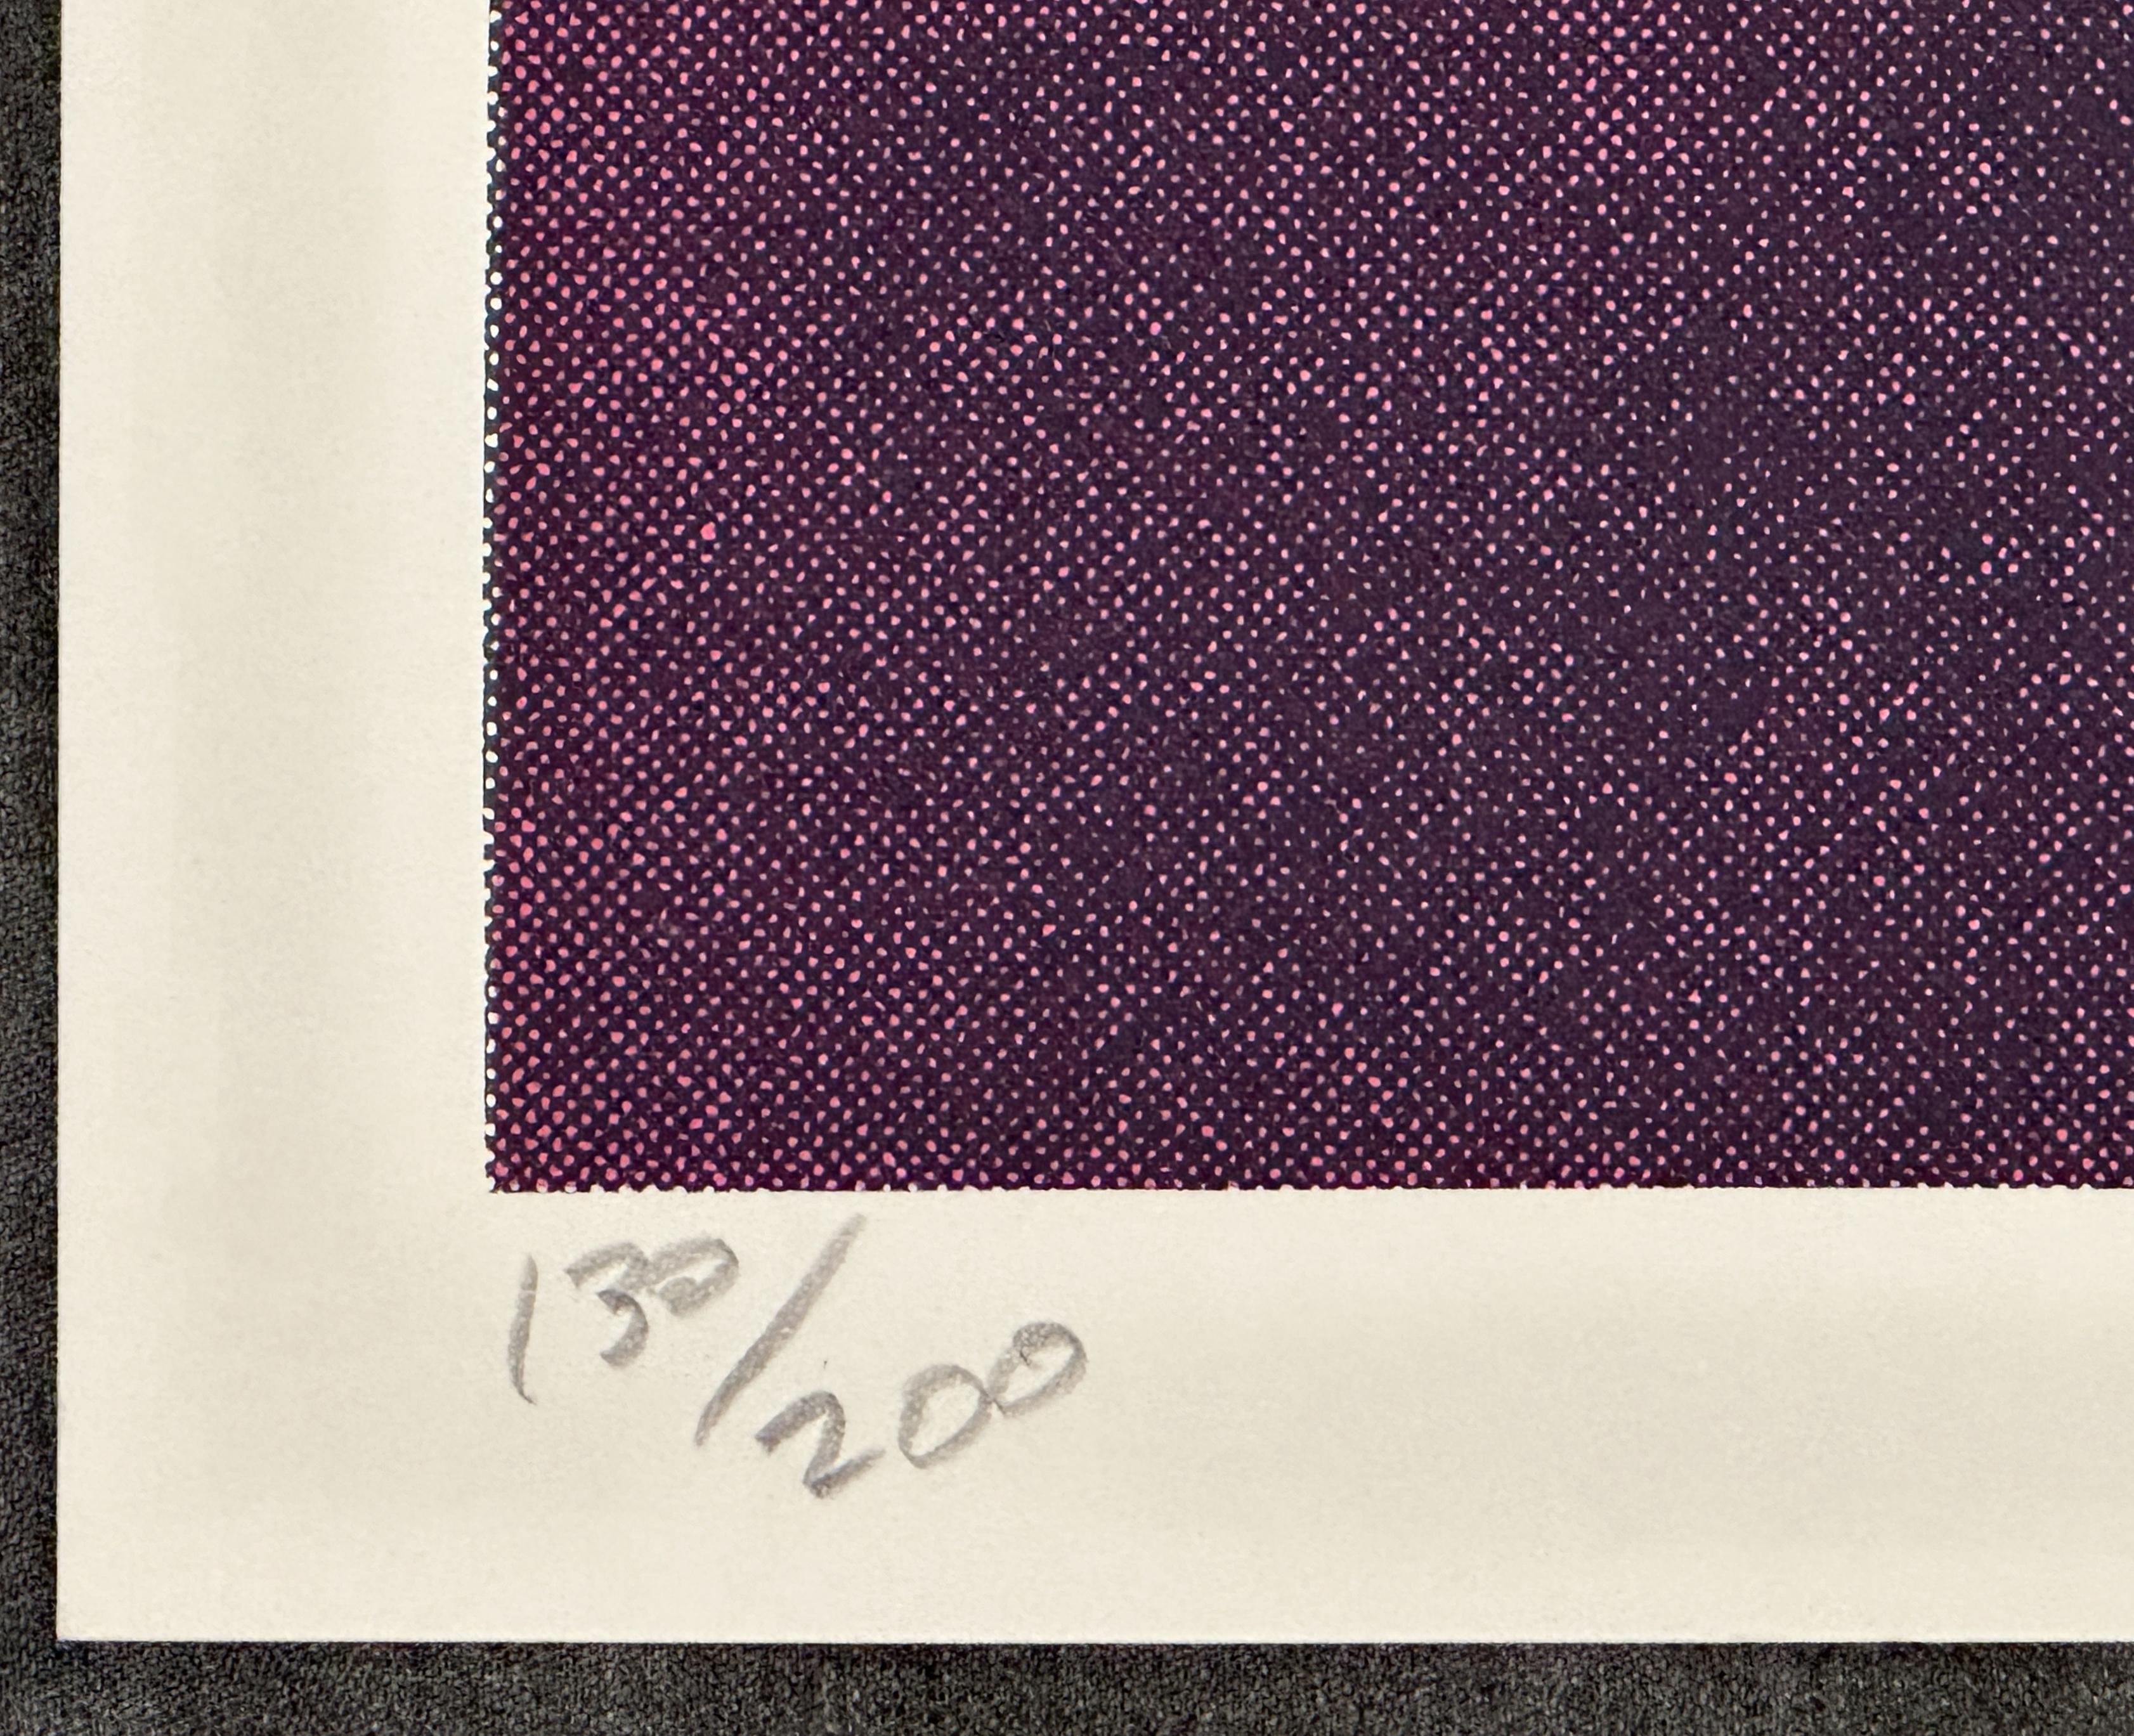 Richard Bernstein
Diamantring - 1977
Druck - Siebdruck auf schwerem Papier
Papier: 30'' x 26'' Zoll
Bildgröße: 28